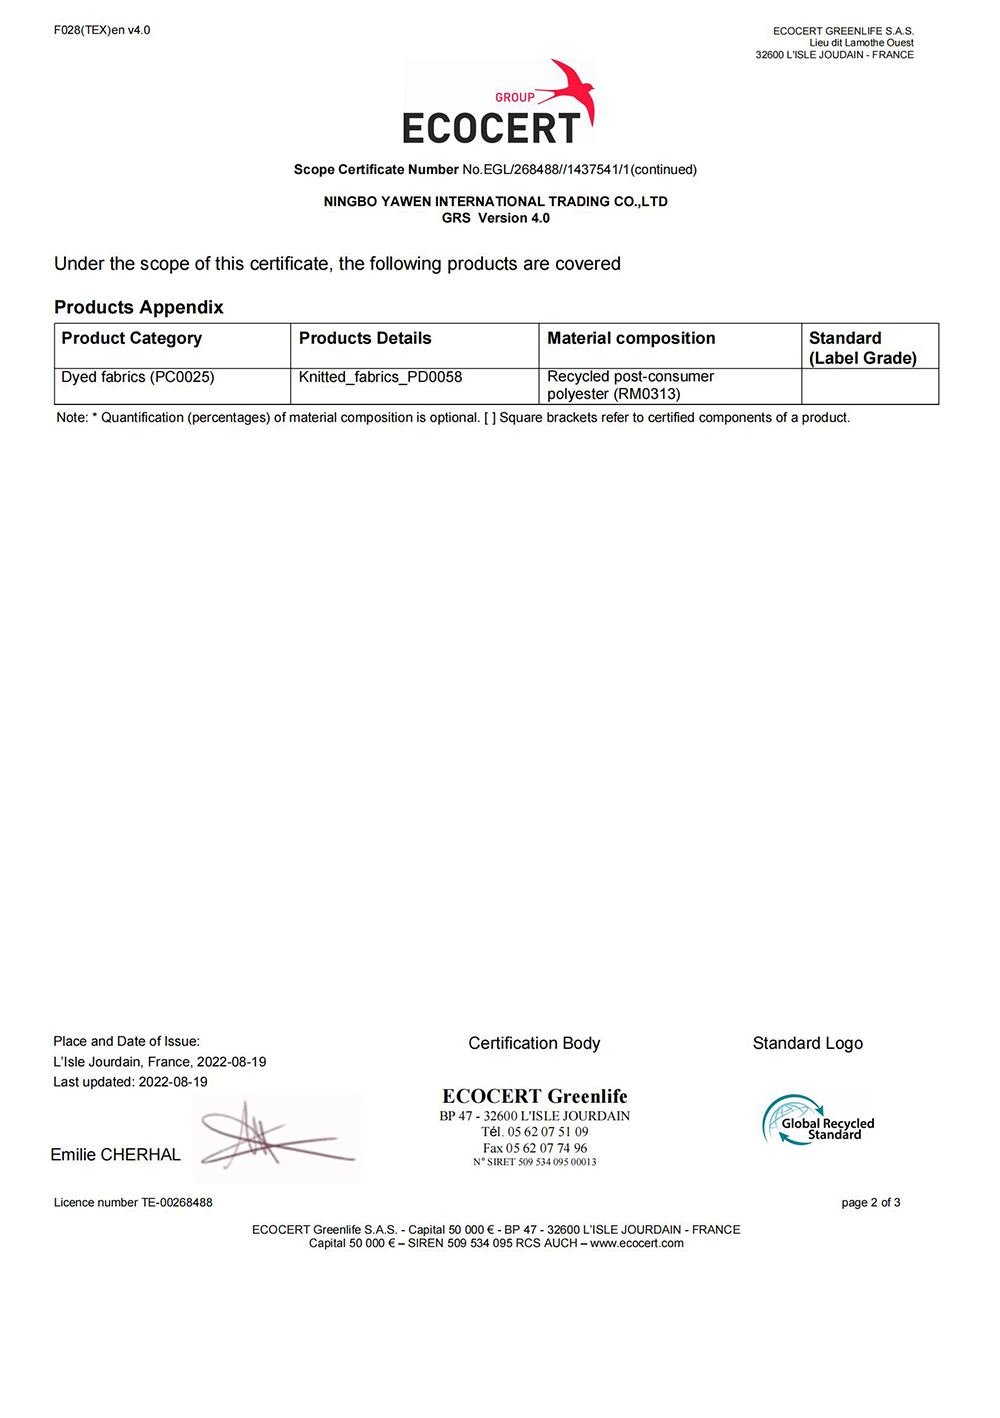 Certificat GRS 4.0-Ningbo Yawen 2022_01